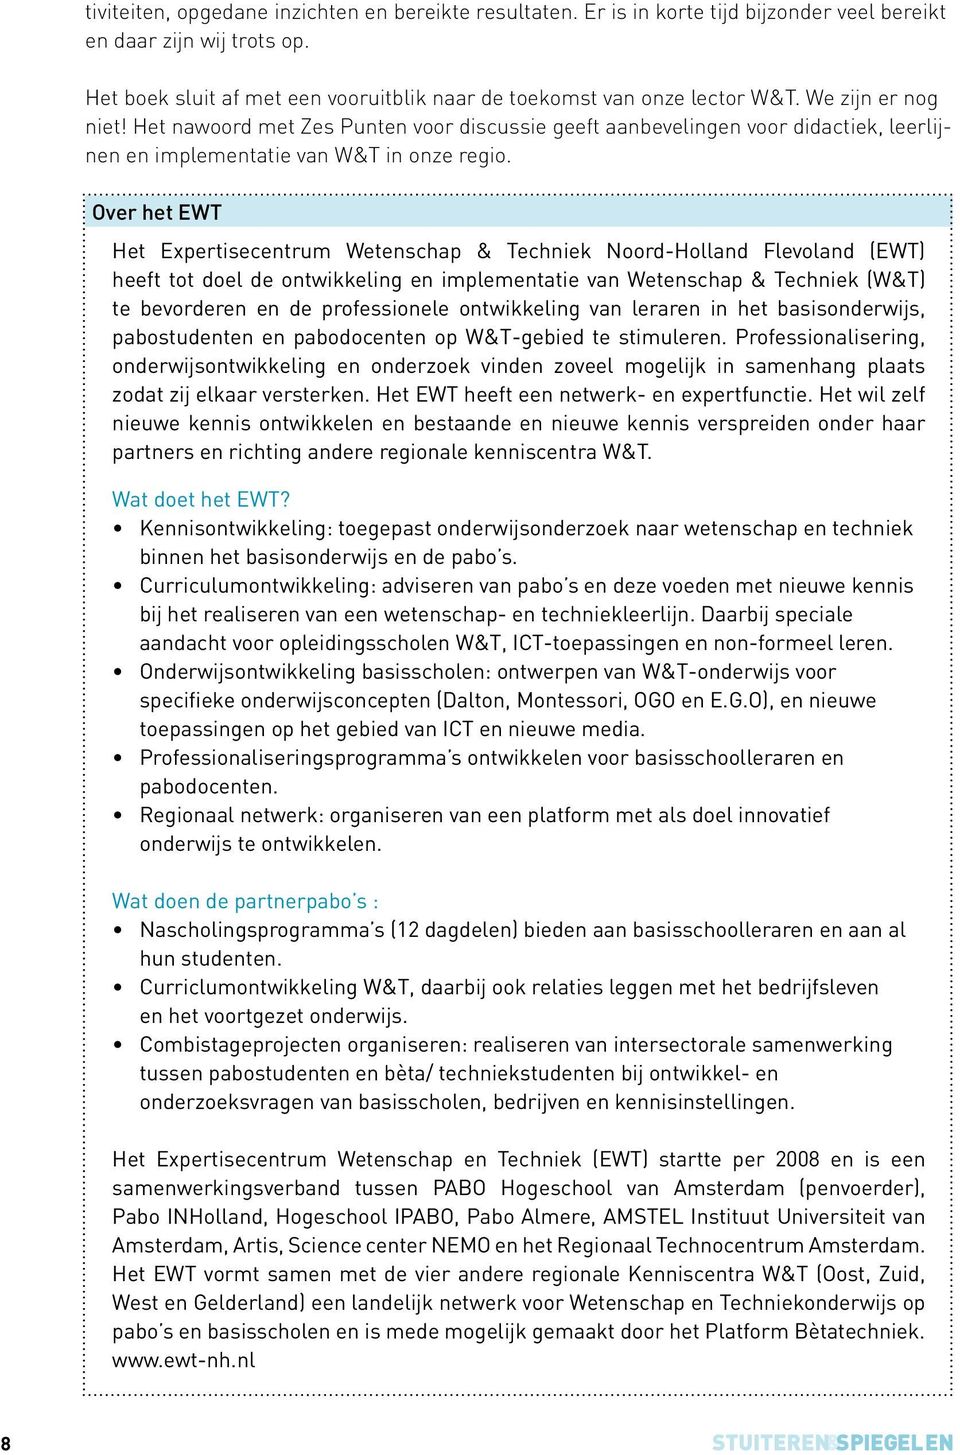 Over het EWT Het Expertisecentrum Wetenschap & Techniek Noord-Holland Flevoland (EWT) heeft tot doel de ontwikkeling en implementatie van Wetenschap & Techniek (W&T) te bevorderen en de professionele